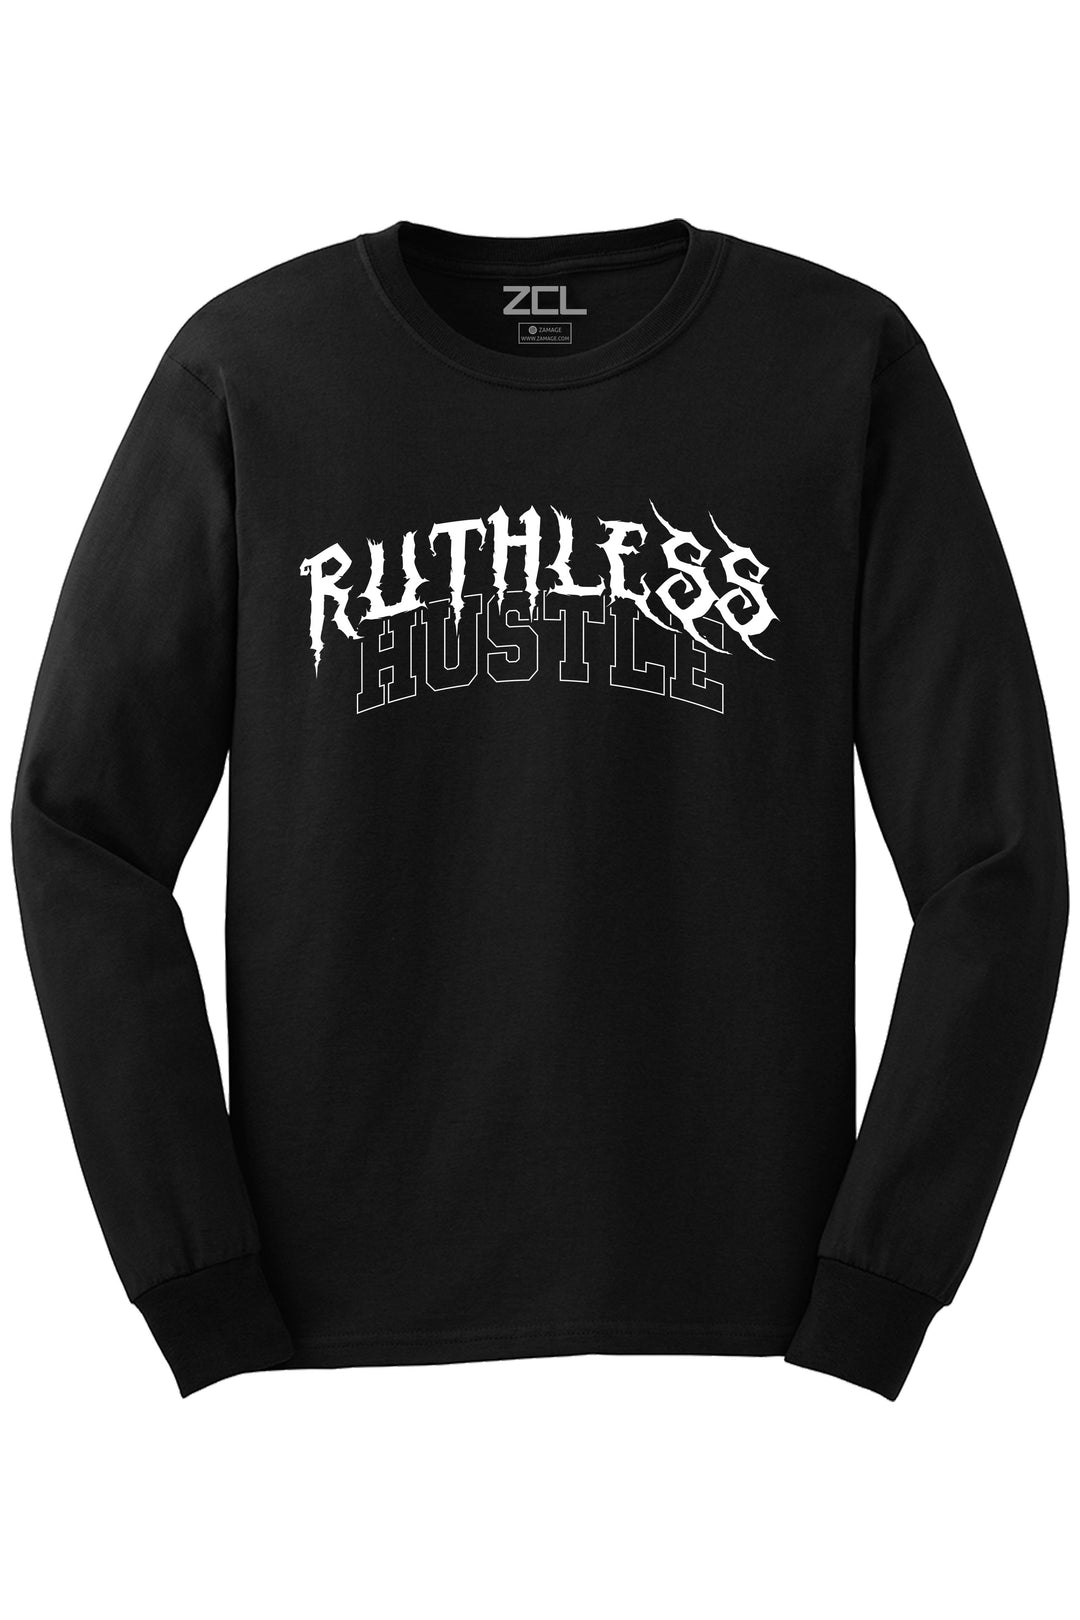 Ruthless Hustle Long Sleeve Tee (White Logo) - Zamage